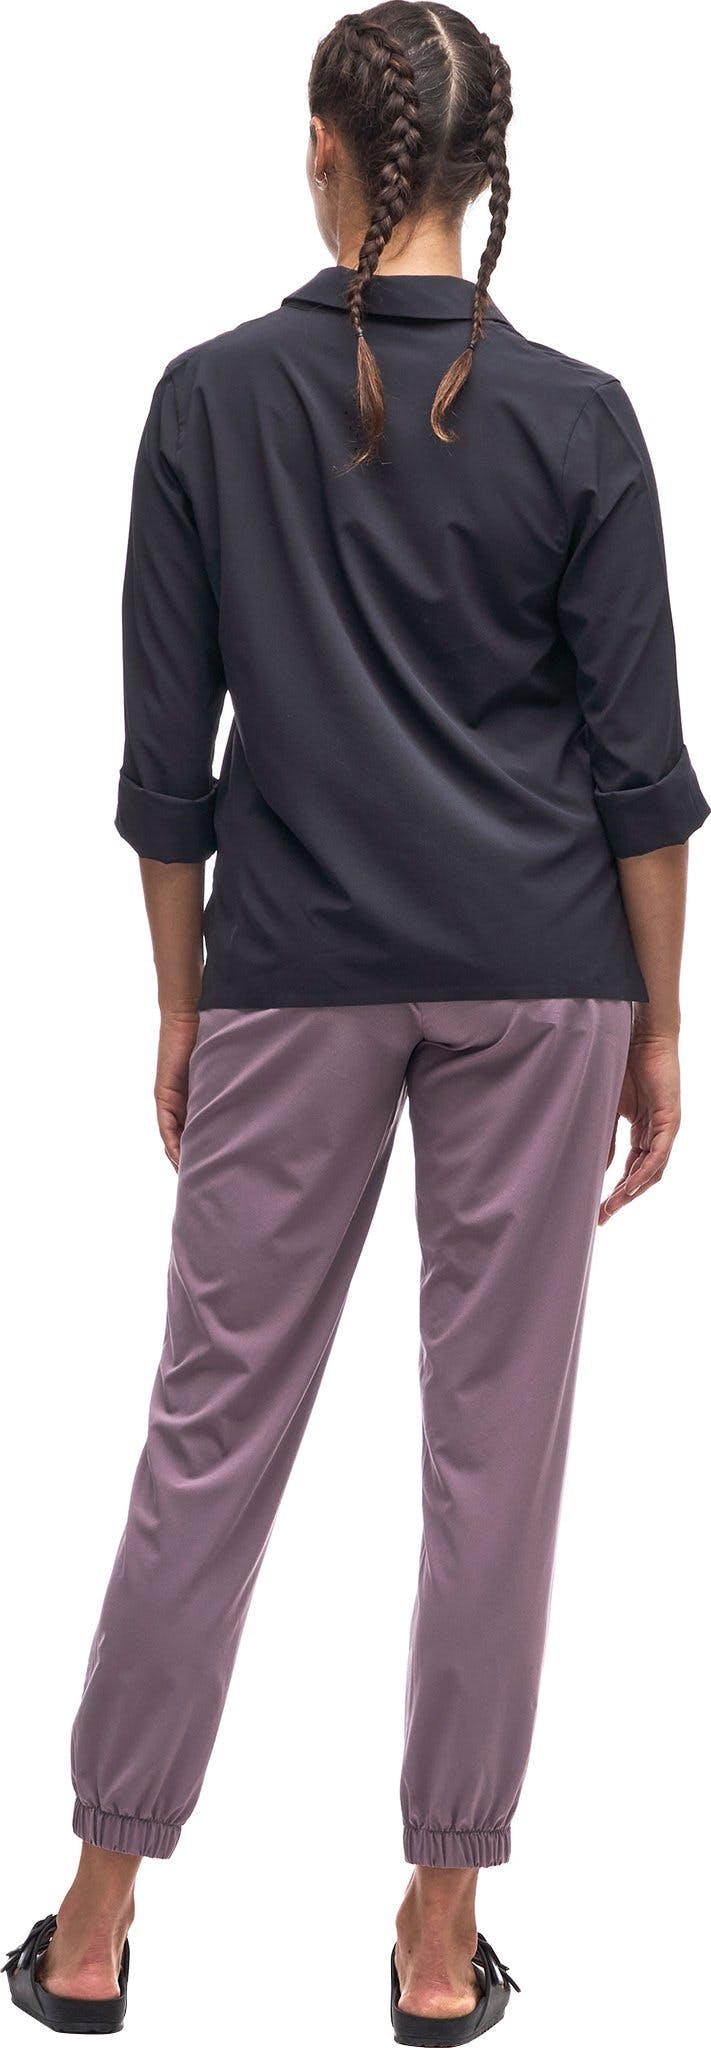 Numéro de l'image de la galerie de produits 2 pour le produit Pantalon de jogging taille régulière Lastik - Femme